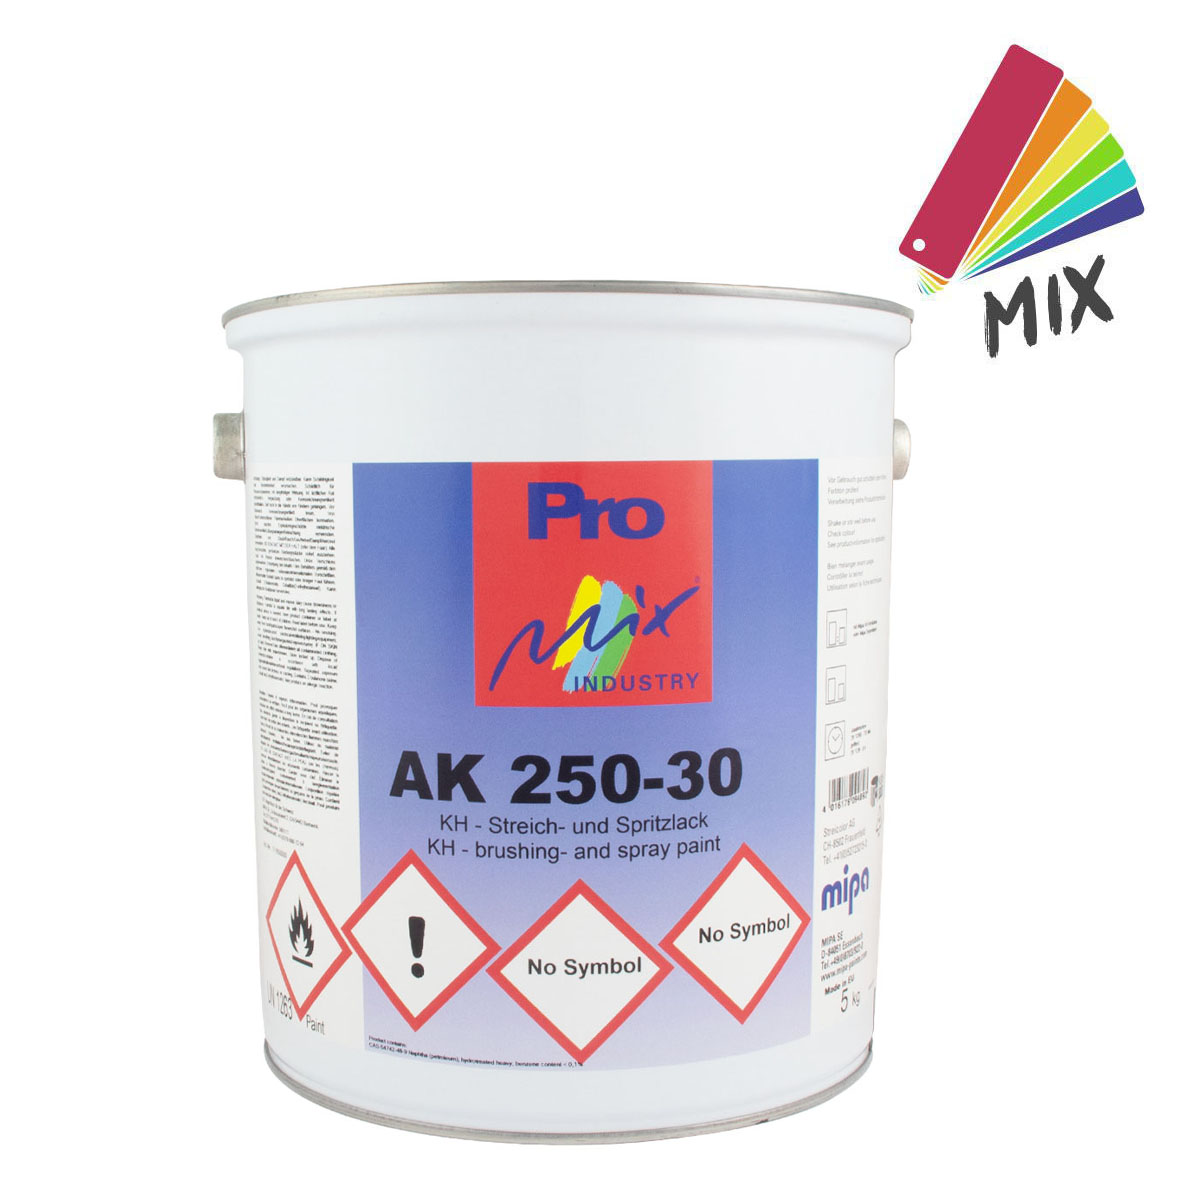 Pro-mipamix_AK-250-30-streichundstpritzlack_5kg_gross